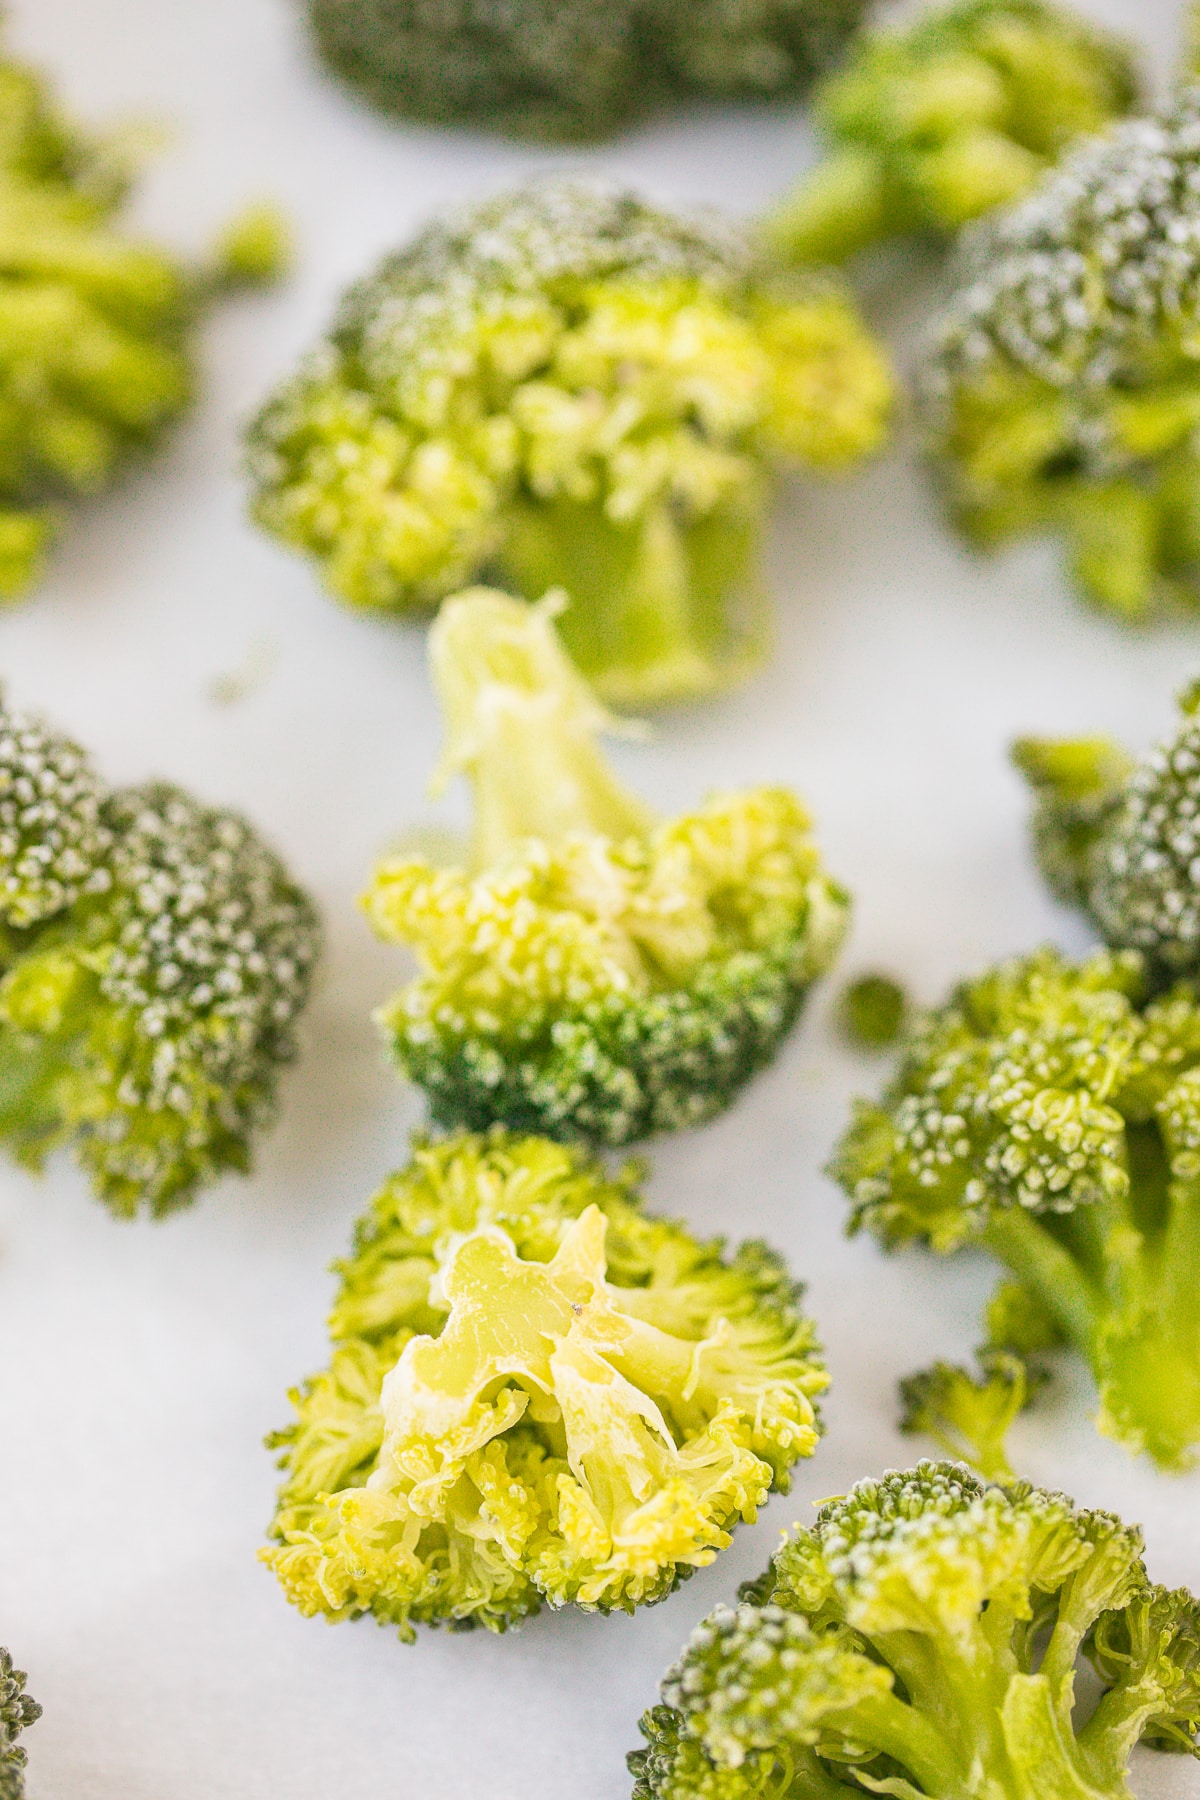 frozen broccoli florets